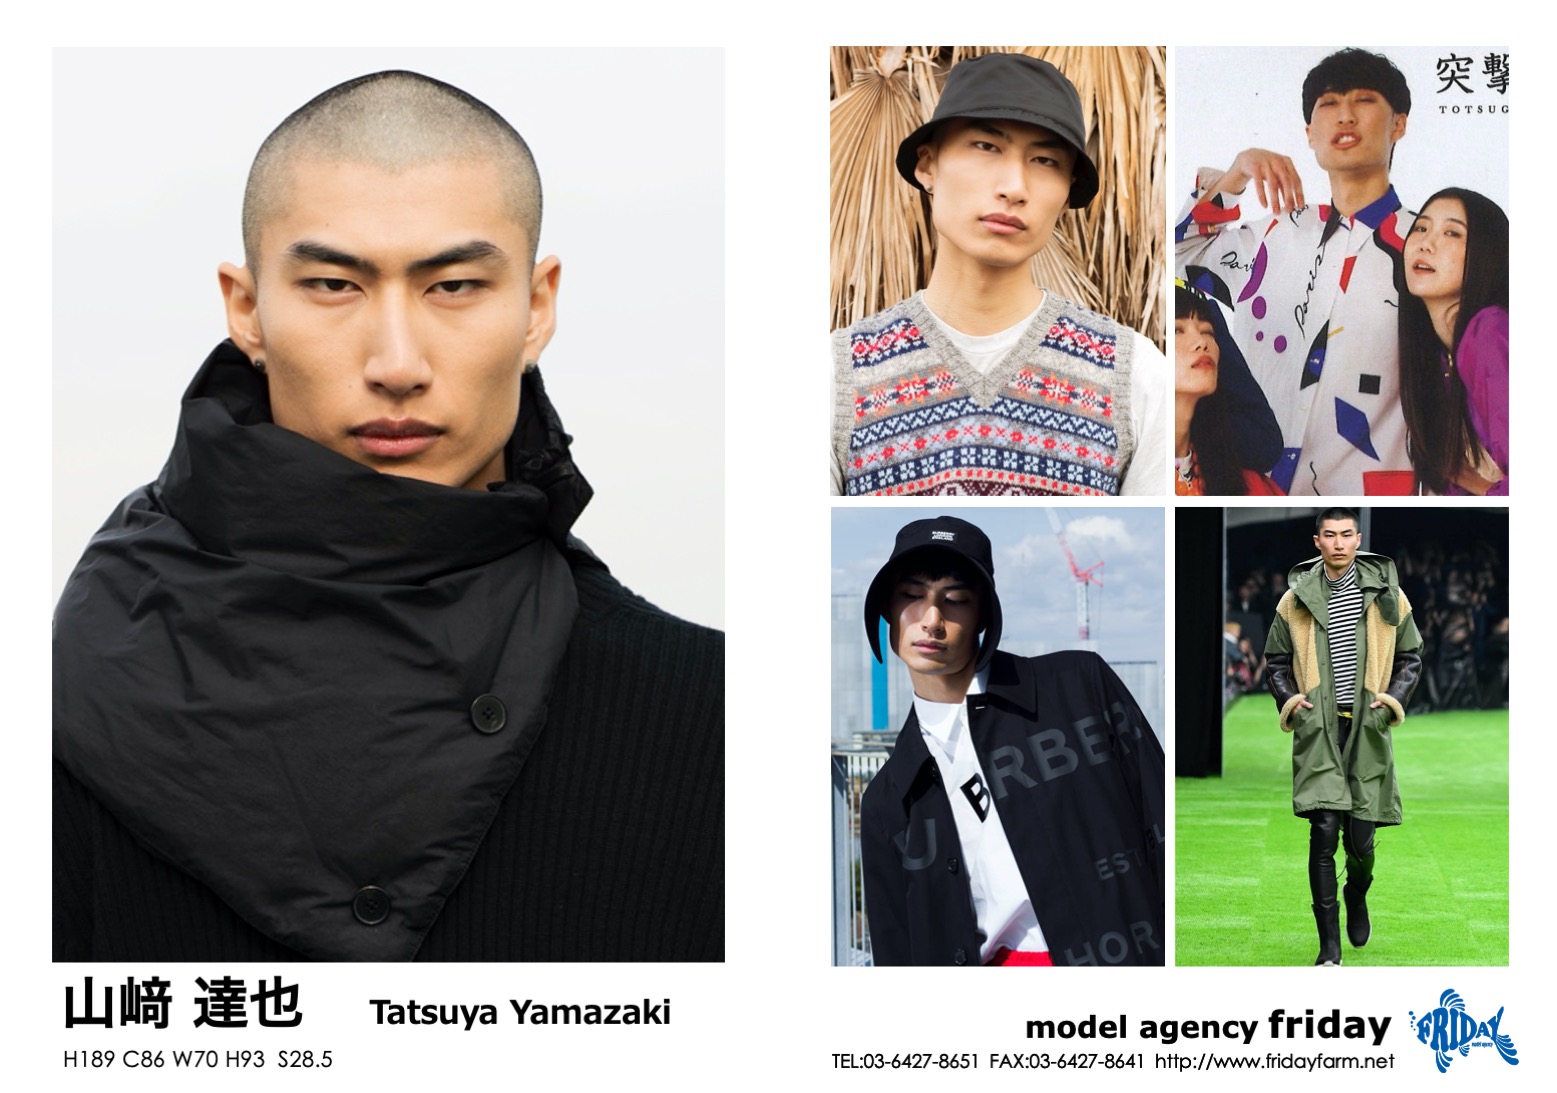 山﨑 達也 - Tatsuya Yamazaki | model agency friday